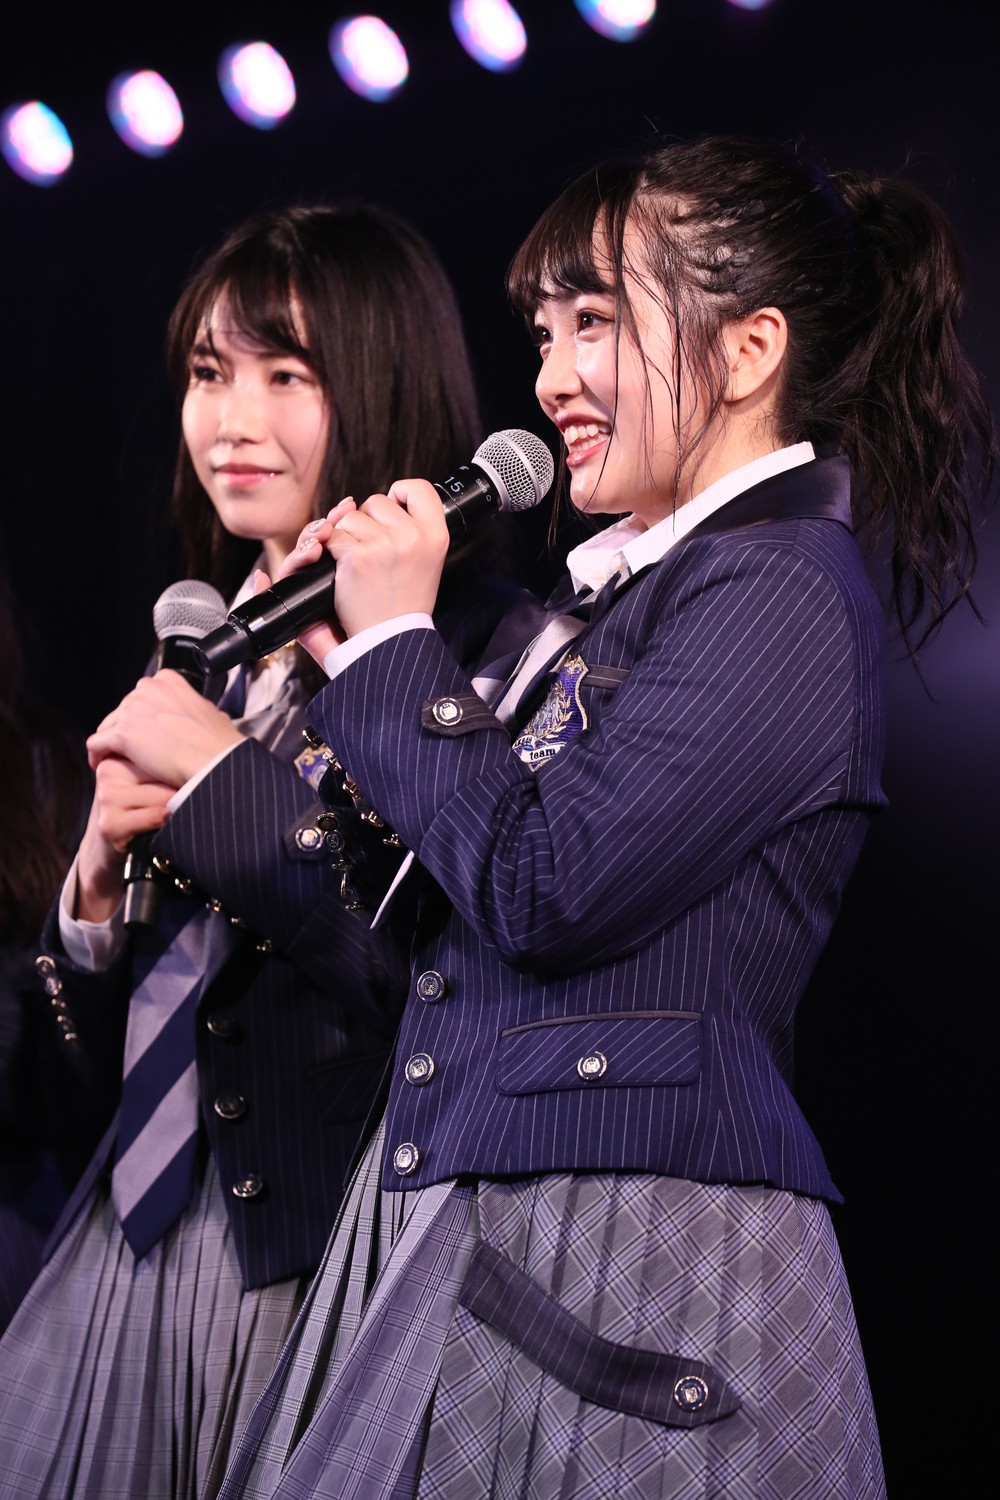 画像・写真 | AKB48向井地美音、4・1から3代目総監督に 横山由依からバトンタッチ 3枚目 | ORICON NEWS